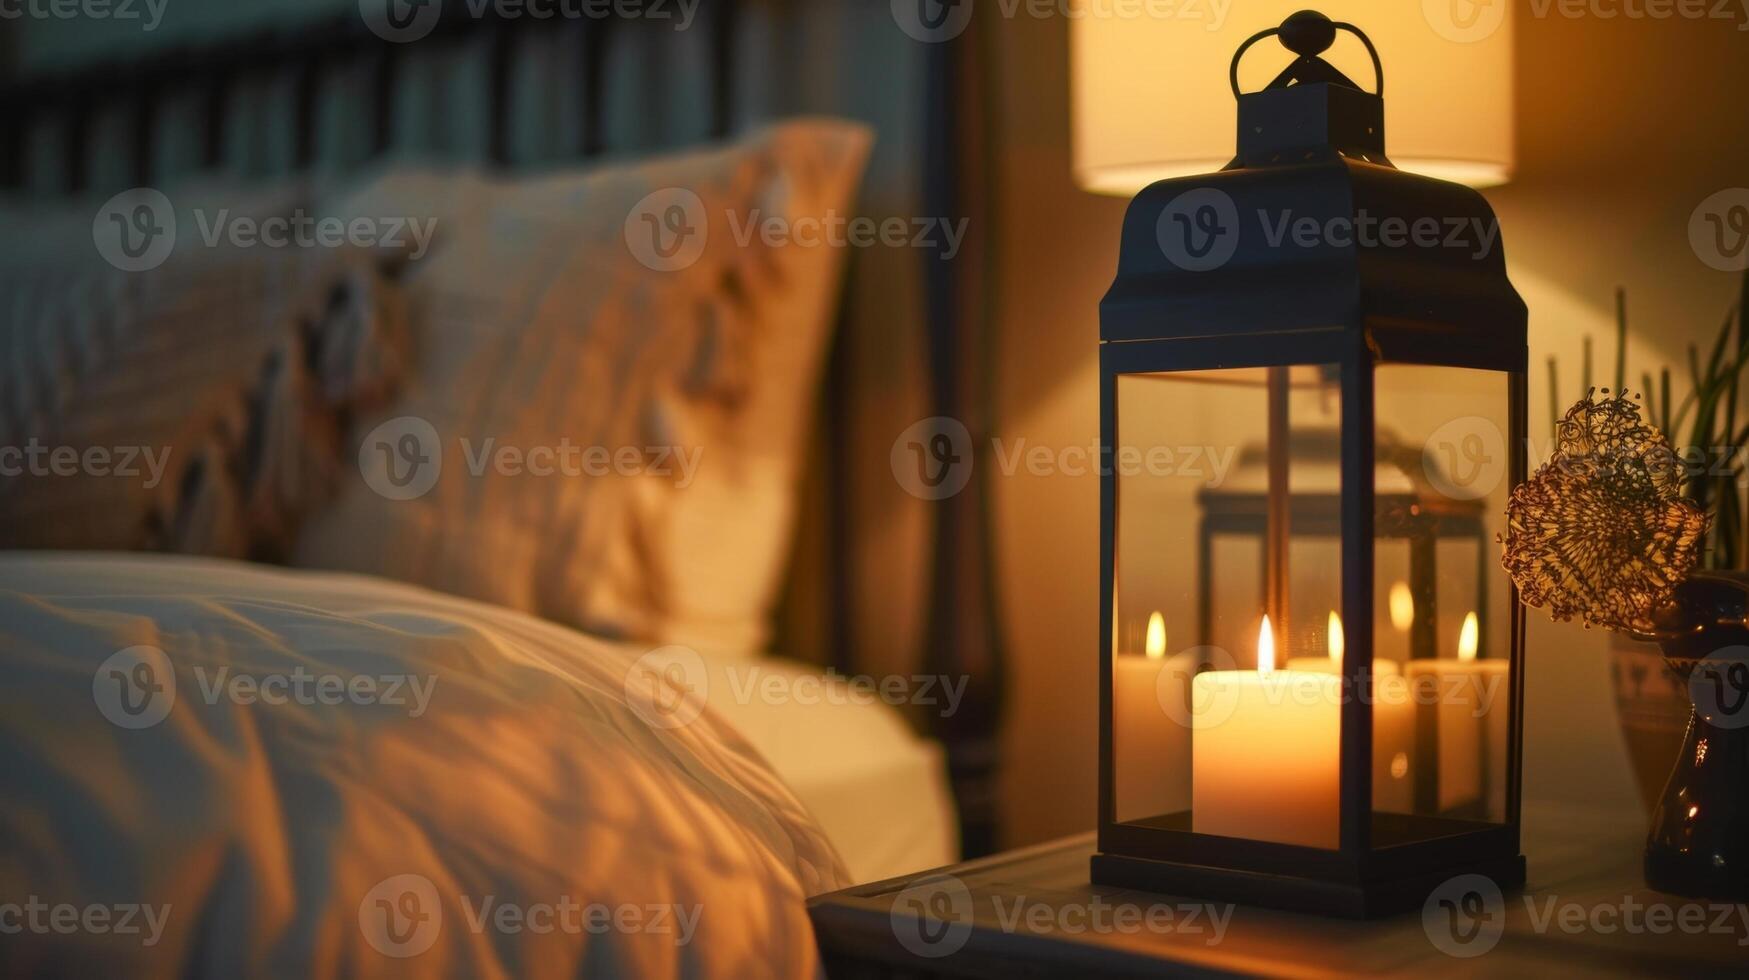 repos sur une côté table dans une chambre une grand lanterne illumine le pièce avec ses doux aux chandelles création une paisible et serein ambiance. 2d plat dessin animé photo